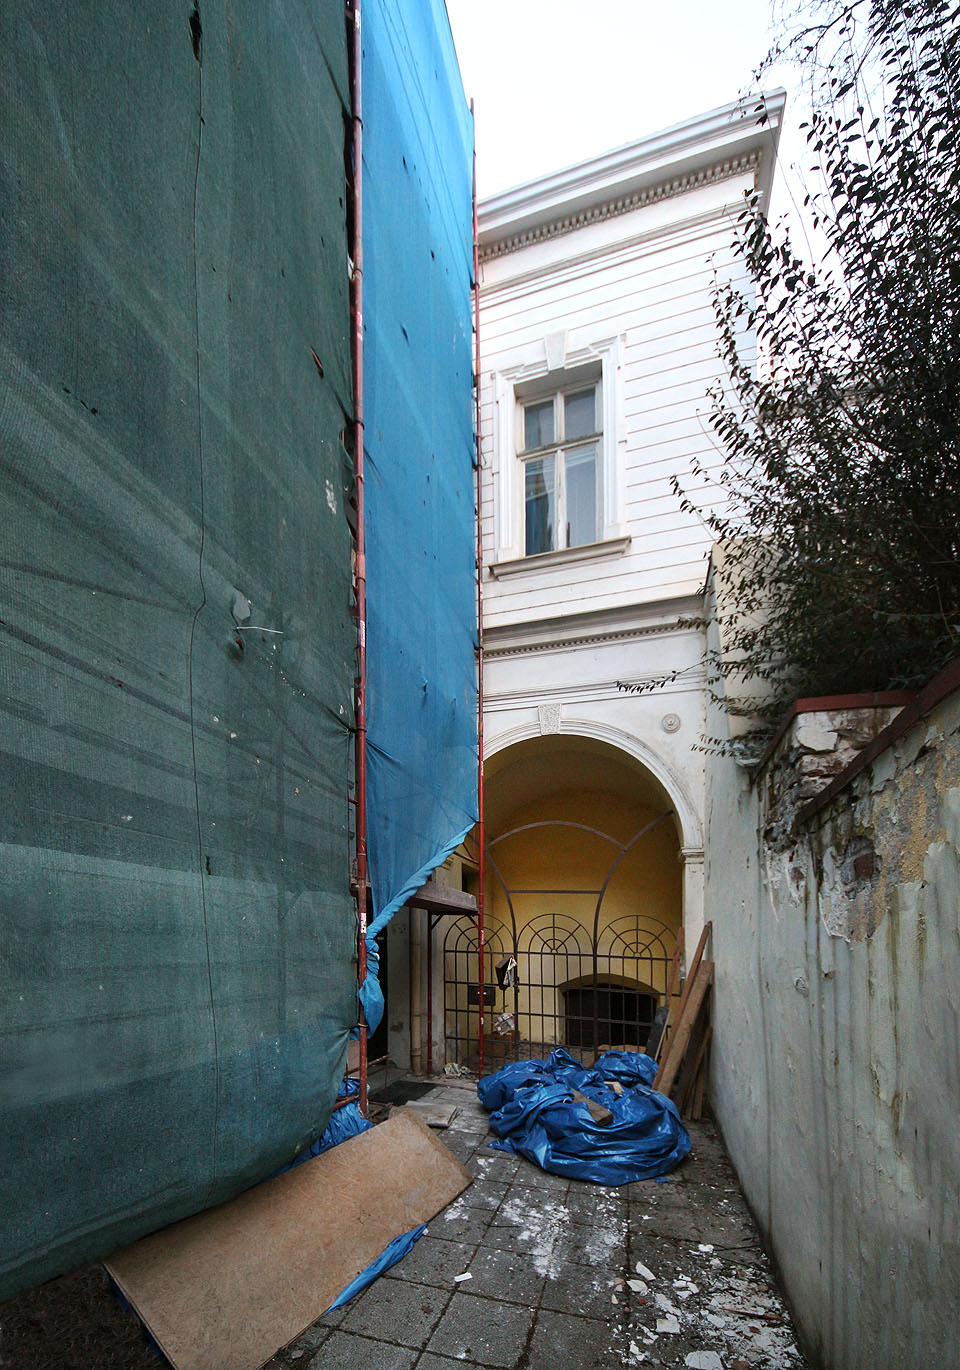 Vstup do předního sklepa vily s monumentálním klenutým portálem. V přízemí se zřejmě nacházely společenské prostory, kde se konaly akce Československo-lotyšské společnosti.